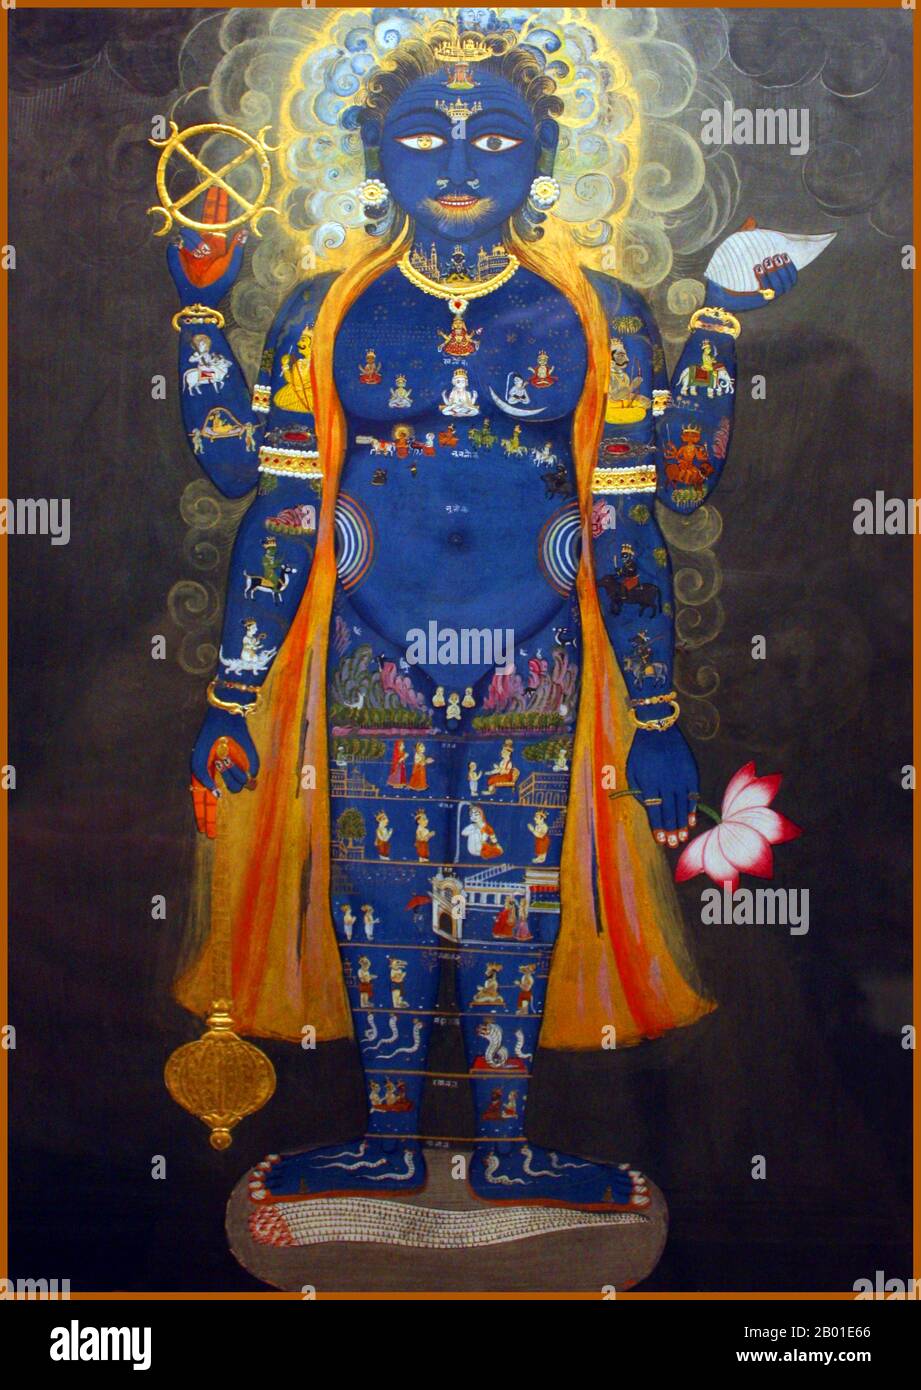 Inde: Vishnu comme Vishvarupa. Aquarelle, Jaipur, Rajasthan, c. 1800-1820. Vishnu (Sanskrit विष्णु Viṣṇu) est le Dieu suprême dans la tradition vaishnavite de l'hindouisme. Les disciples de Smarta d'Adi Shankara, entre autres, vénèrent Vishnu comme l'une des cinq formes primaires de Dieu. Vishnu comme l'homme cosmique (Vishvarupa) est représenté ici avec quatre bras, chacun tenant un de ses attributs: Une coquille de conch, une fleur de lotus, un mace et sa baguette circulaire, appelé Sudarshana chakra (signifiant «beau disque»). Les petites figures de tout son corps se réfèrent à son rôle comme l'homme universel qui englobe tout. Banque D'Images